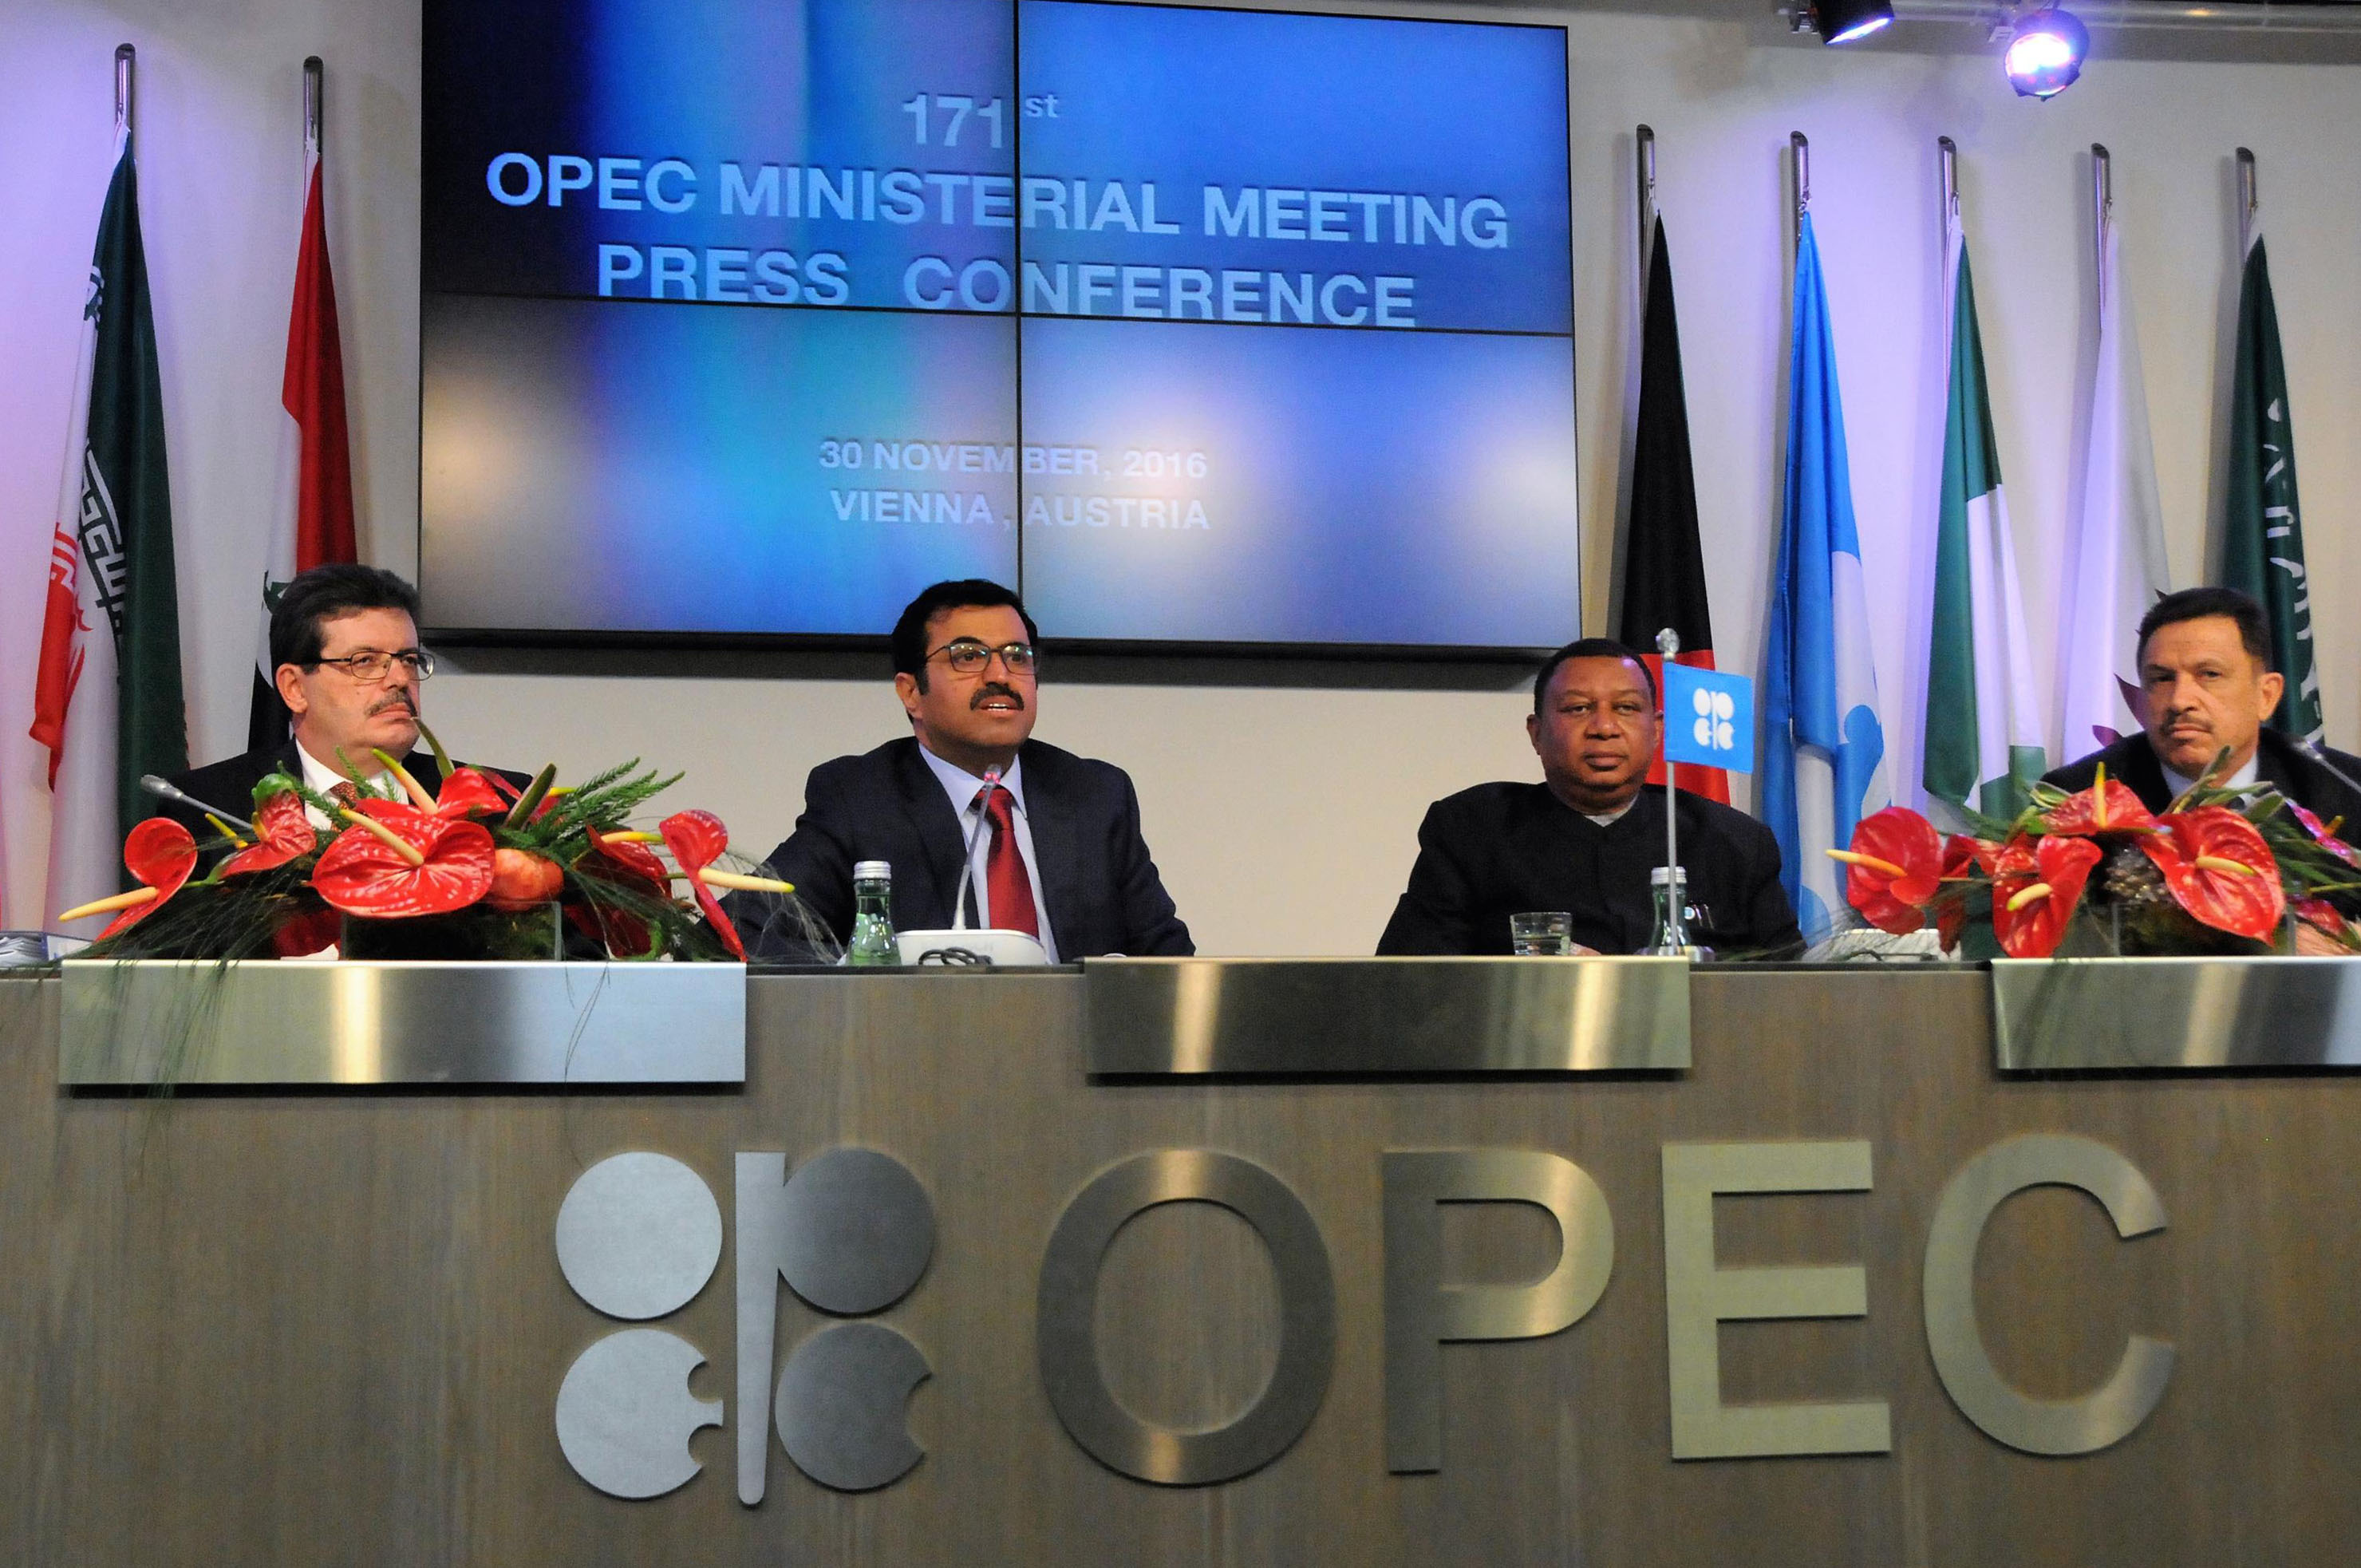 OPEP decidió reducir producción de petróleo en 1.2 millones de barriles diarios y estableció un tope de producción de petróleo de 32.5 millones de barriles al día.